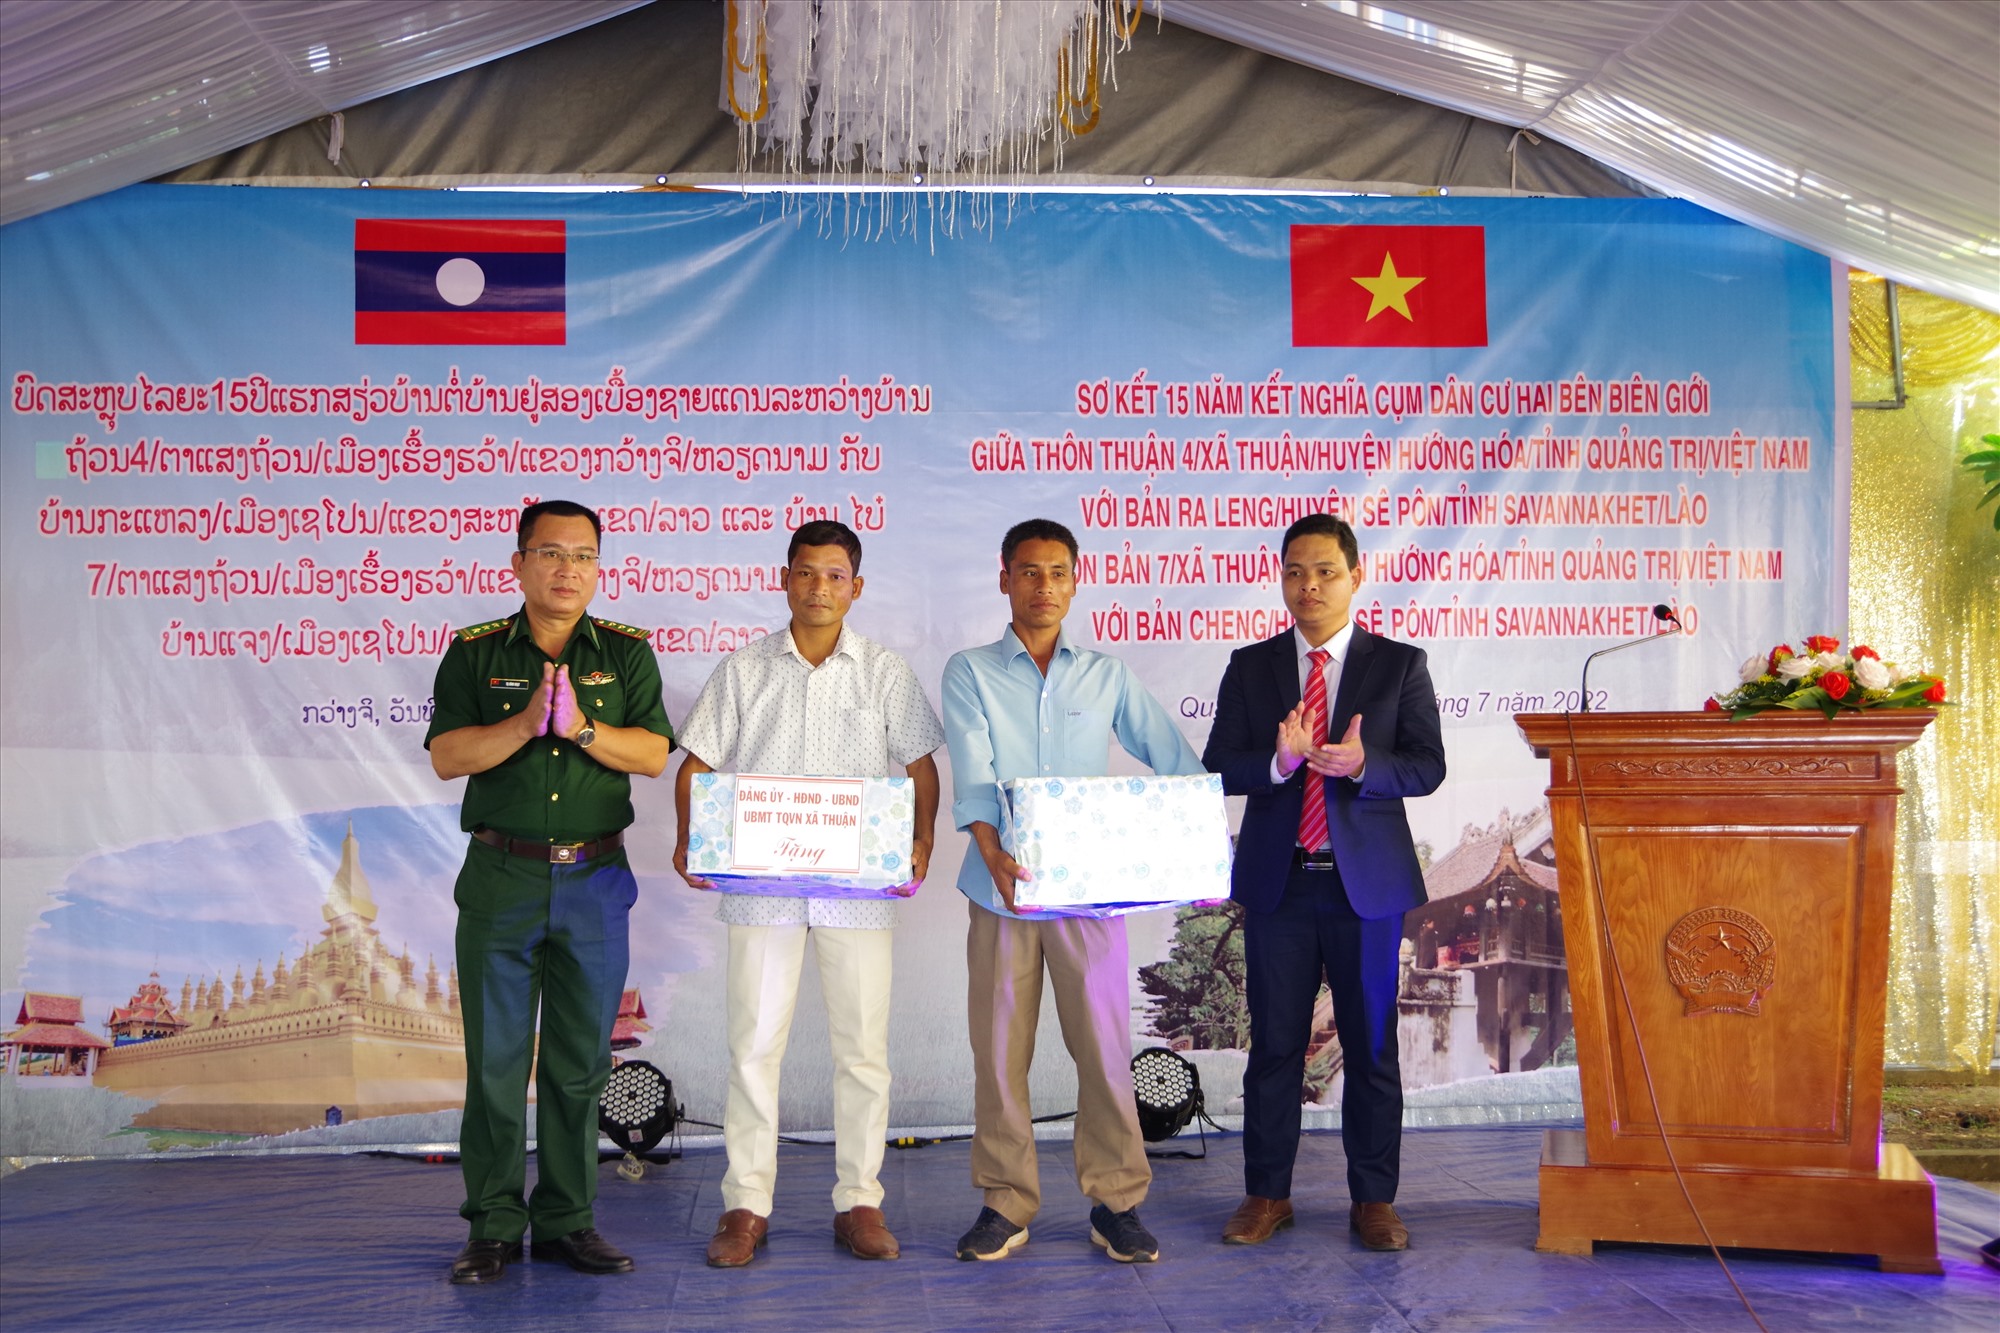 Đồn Biên phòng Thuận và UBND xã Thuận tặng quà cho các cặp bản kết nghĩa - Ảnh: M.H